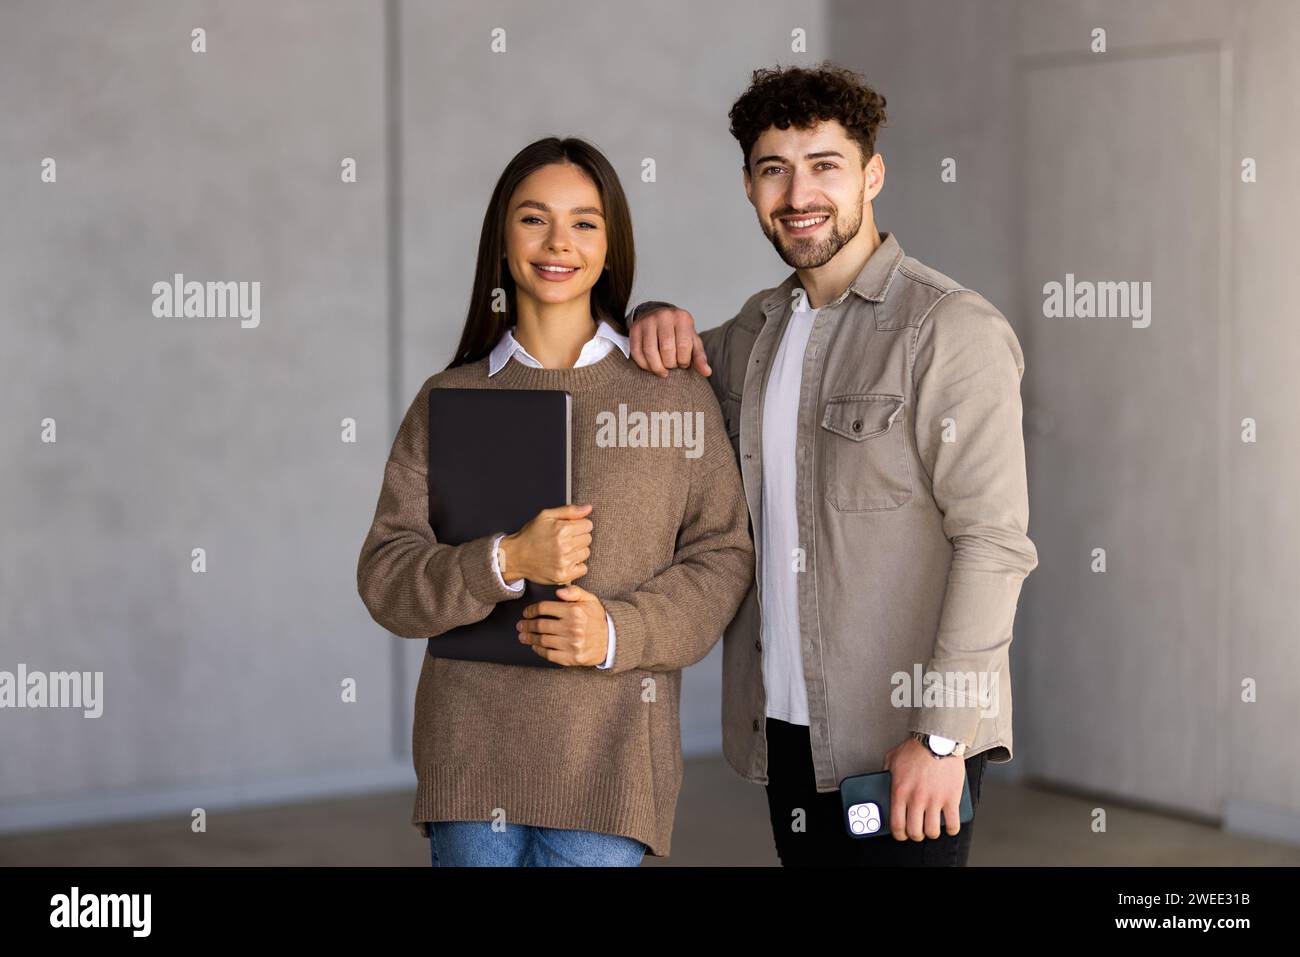 Belle jeune femme d'affaires et bel homme d'affaires iare à l'aide d'une tablette numérique, parlant et souriant, debout devant le mur gris Banque D'Images